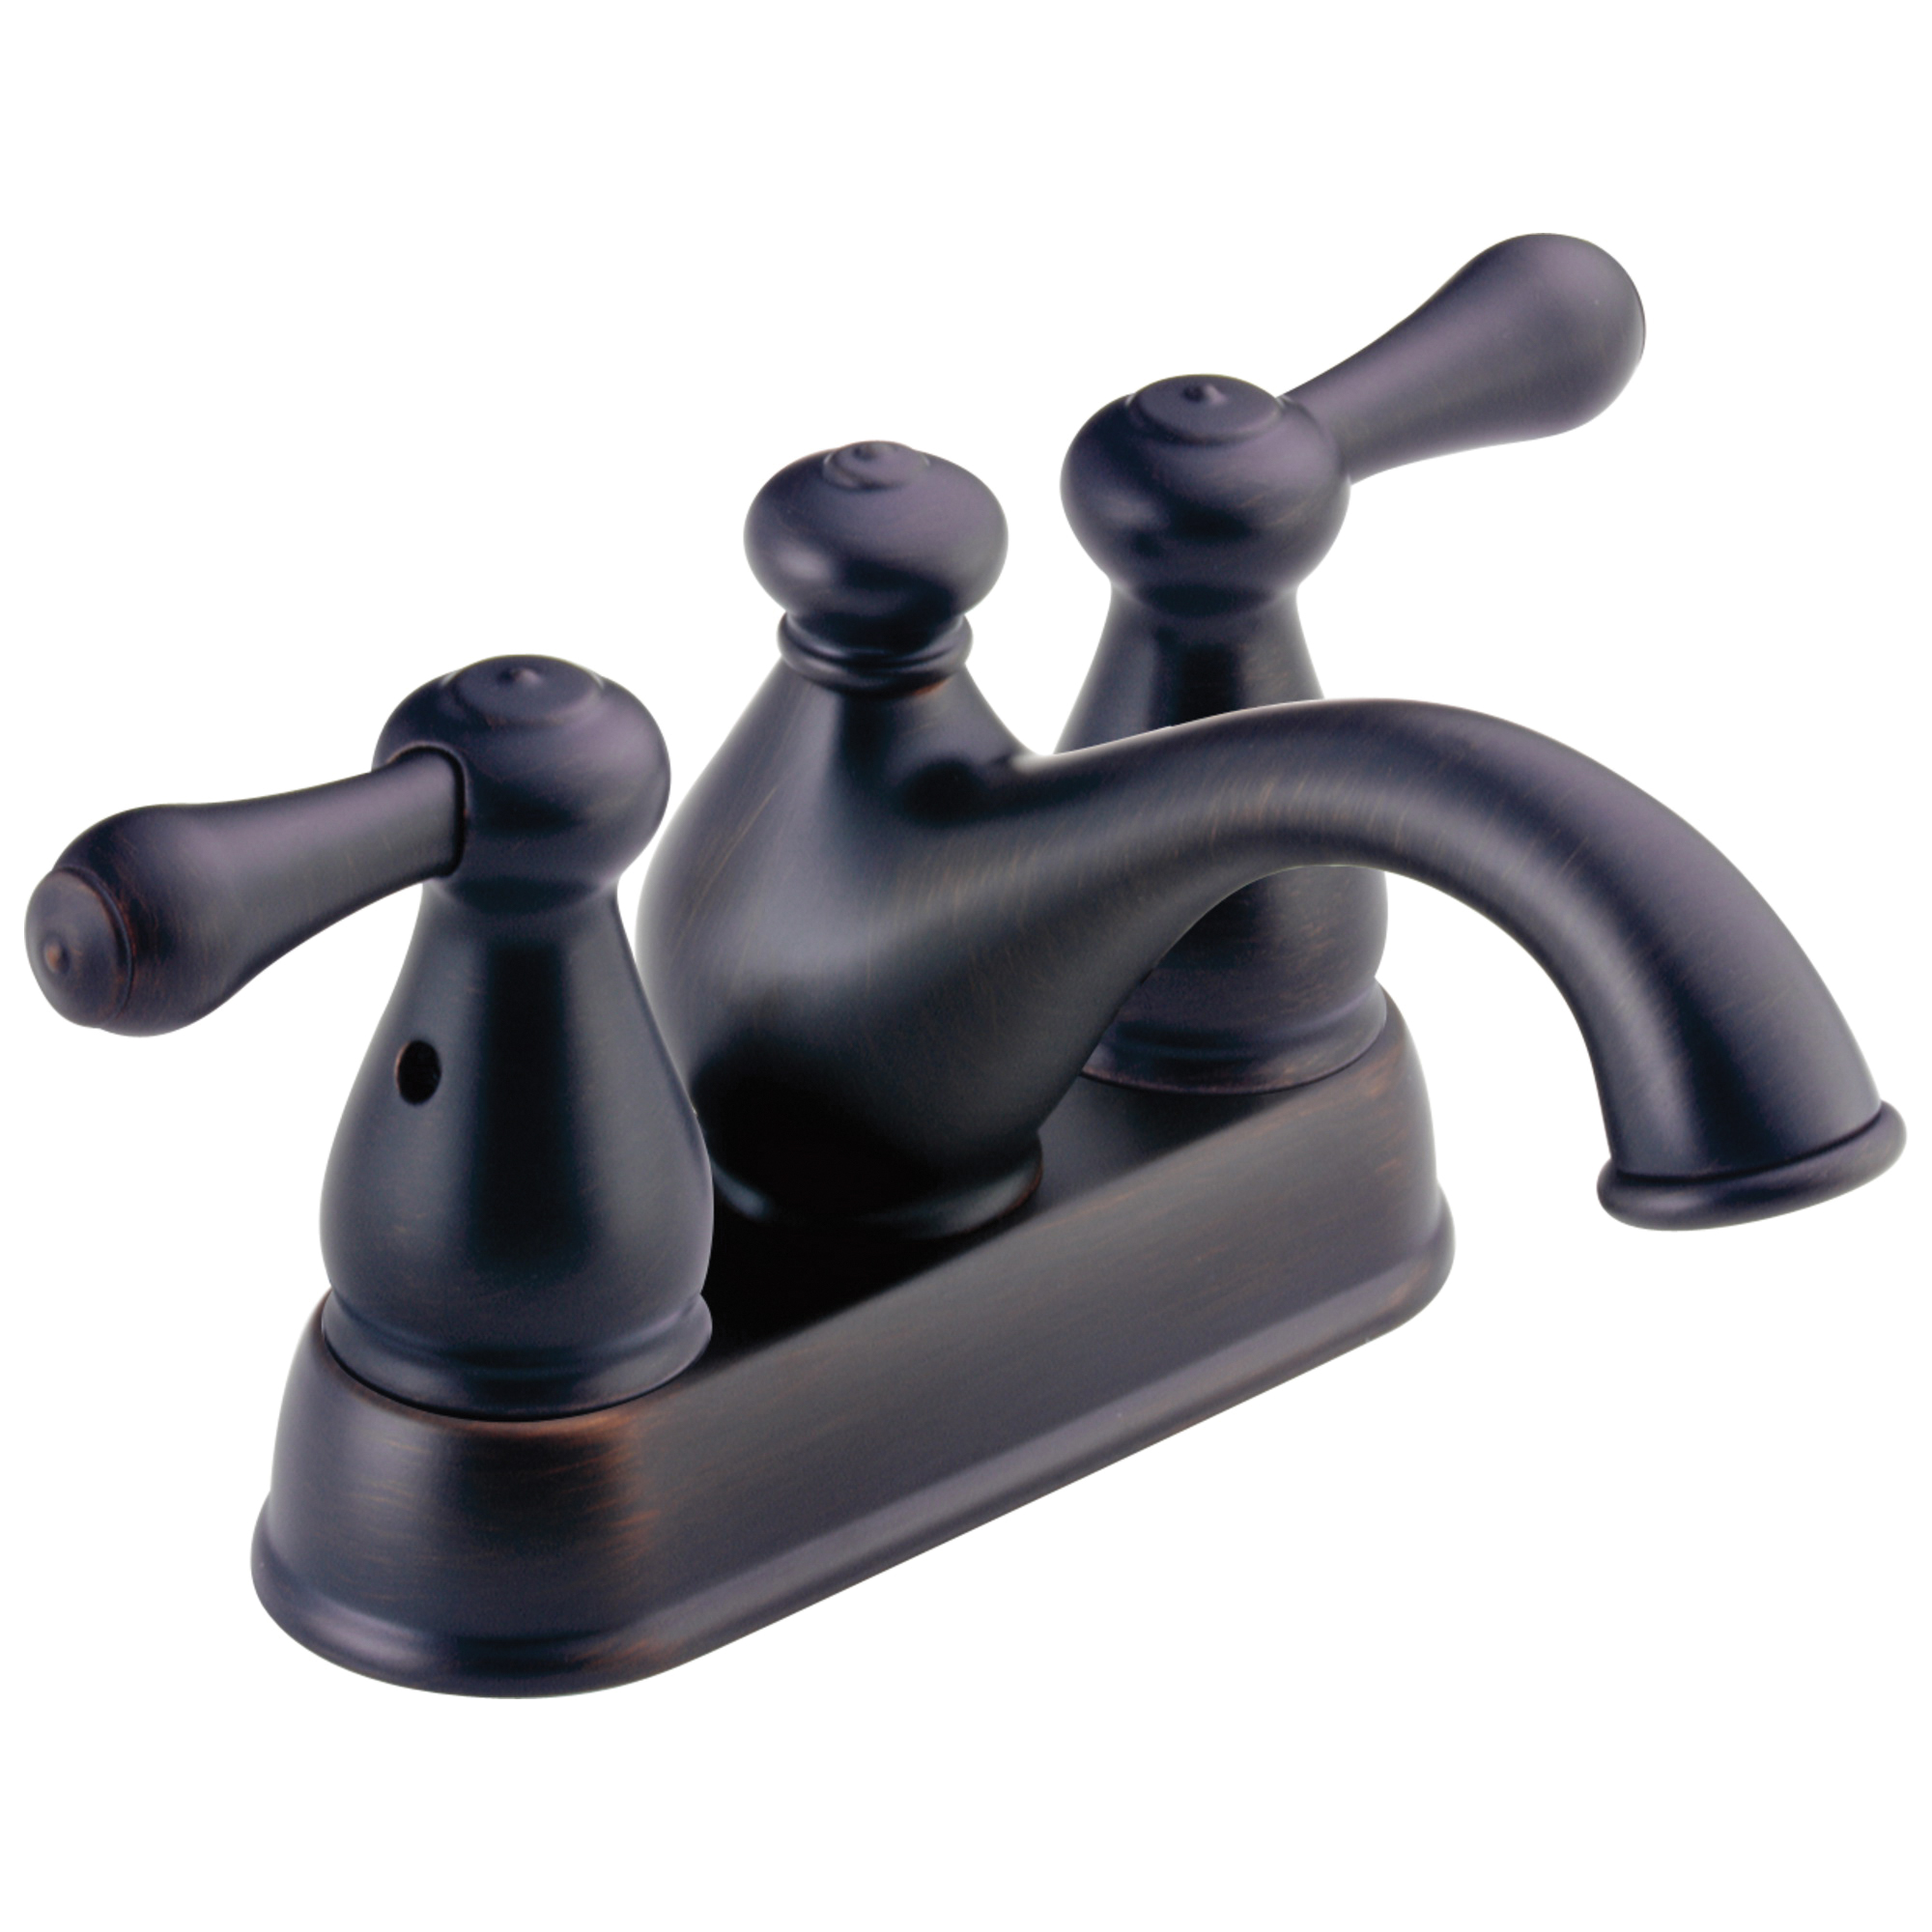 DELTA® 2578LFRB-278RB Centerset Lavatory Faucet, Leland®, Venetian Bronze, 2 Handles, 50/50 Pop-Up Drain, 1.2 gpm